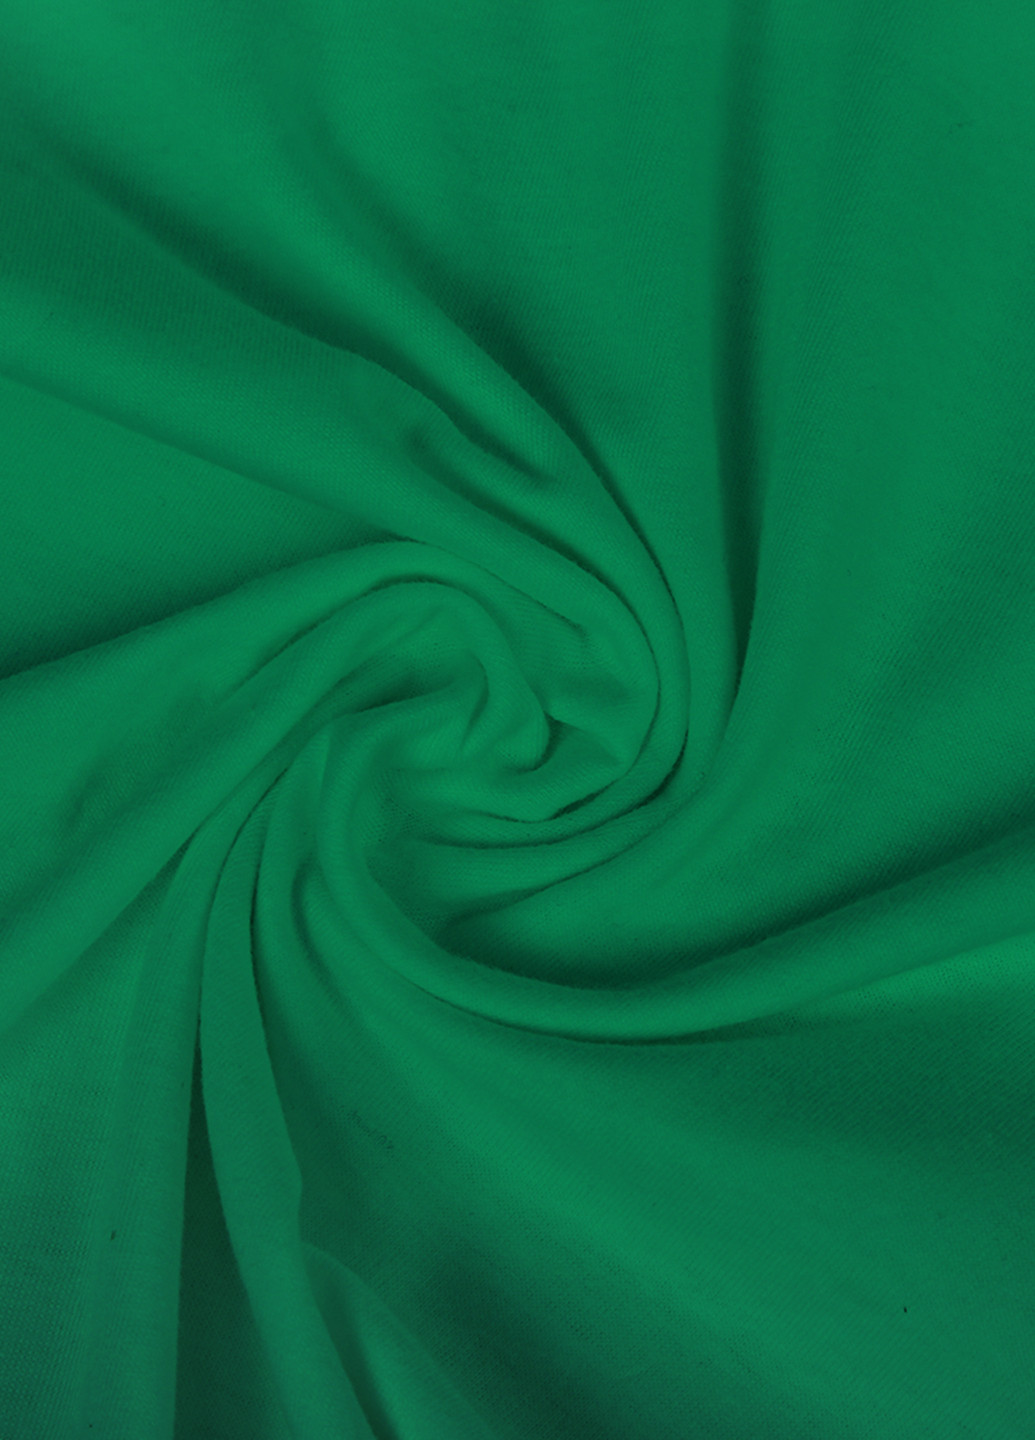 Зеленая демисезонная футболка детская роблокс (roblox)(9224-1708) MobiPrint